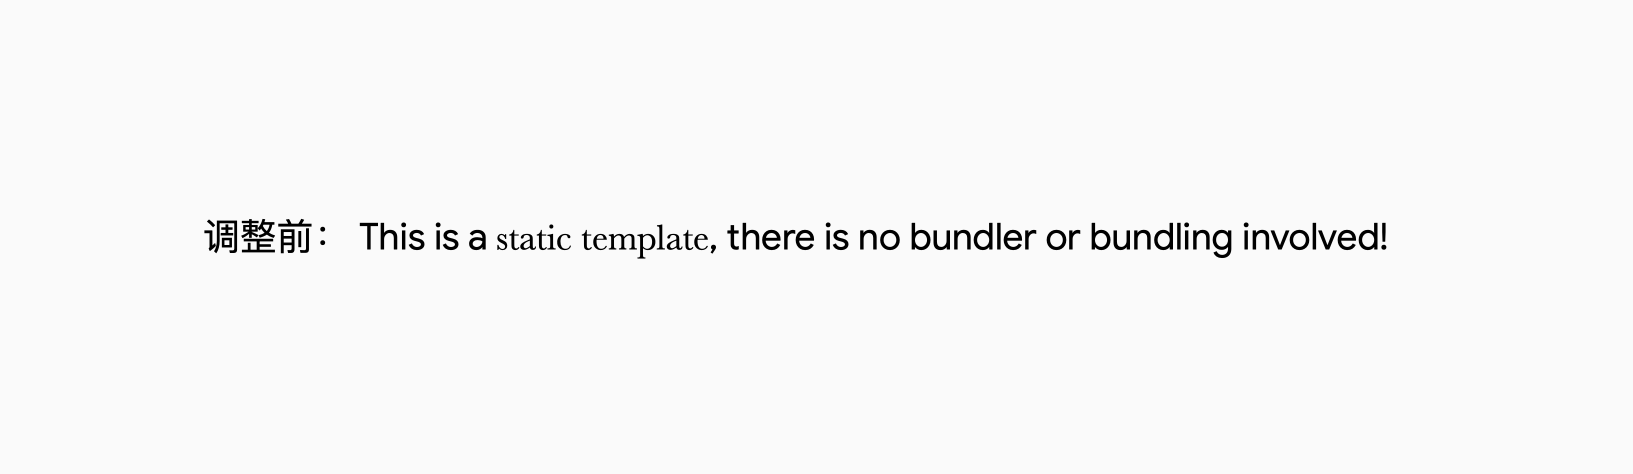 调整前的一句英文：This is a static template, there is no bundler or bundling involved! 其中 static template 字体不同，且看起来较小